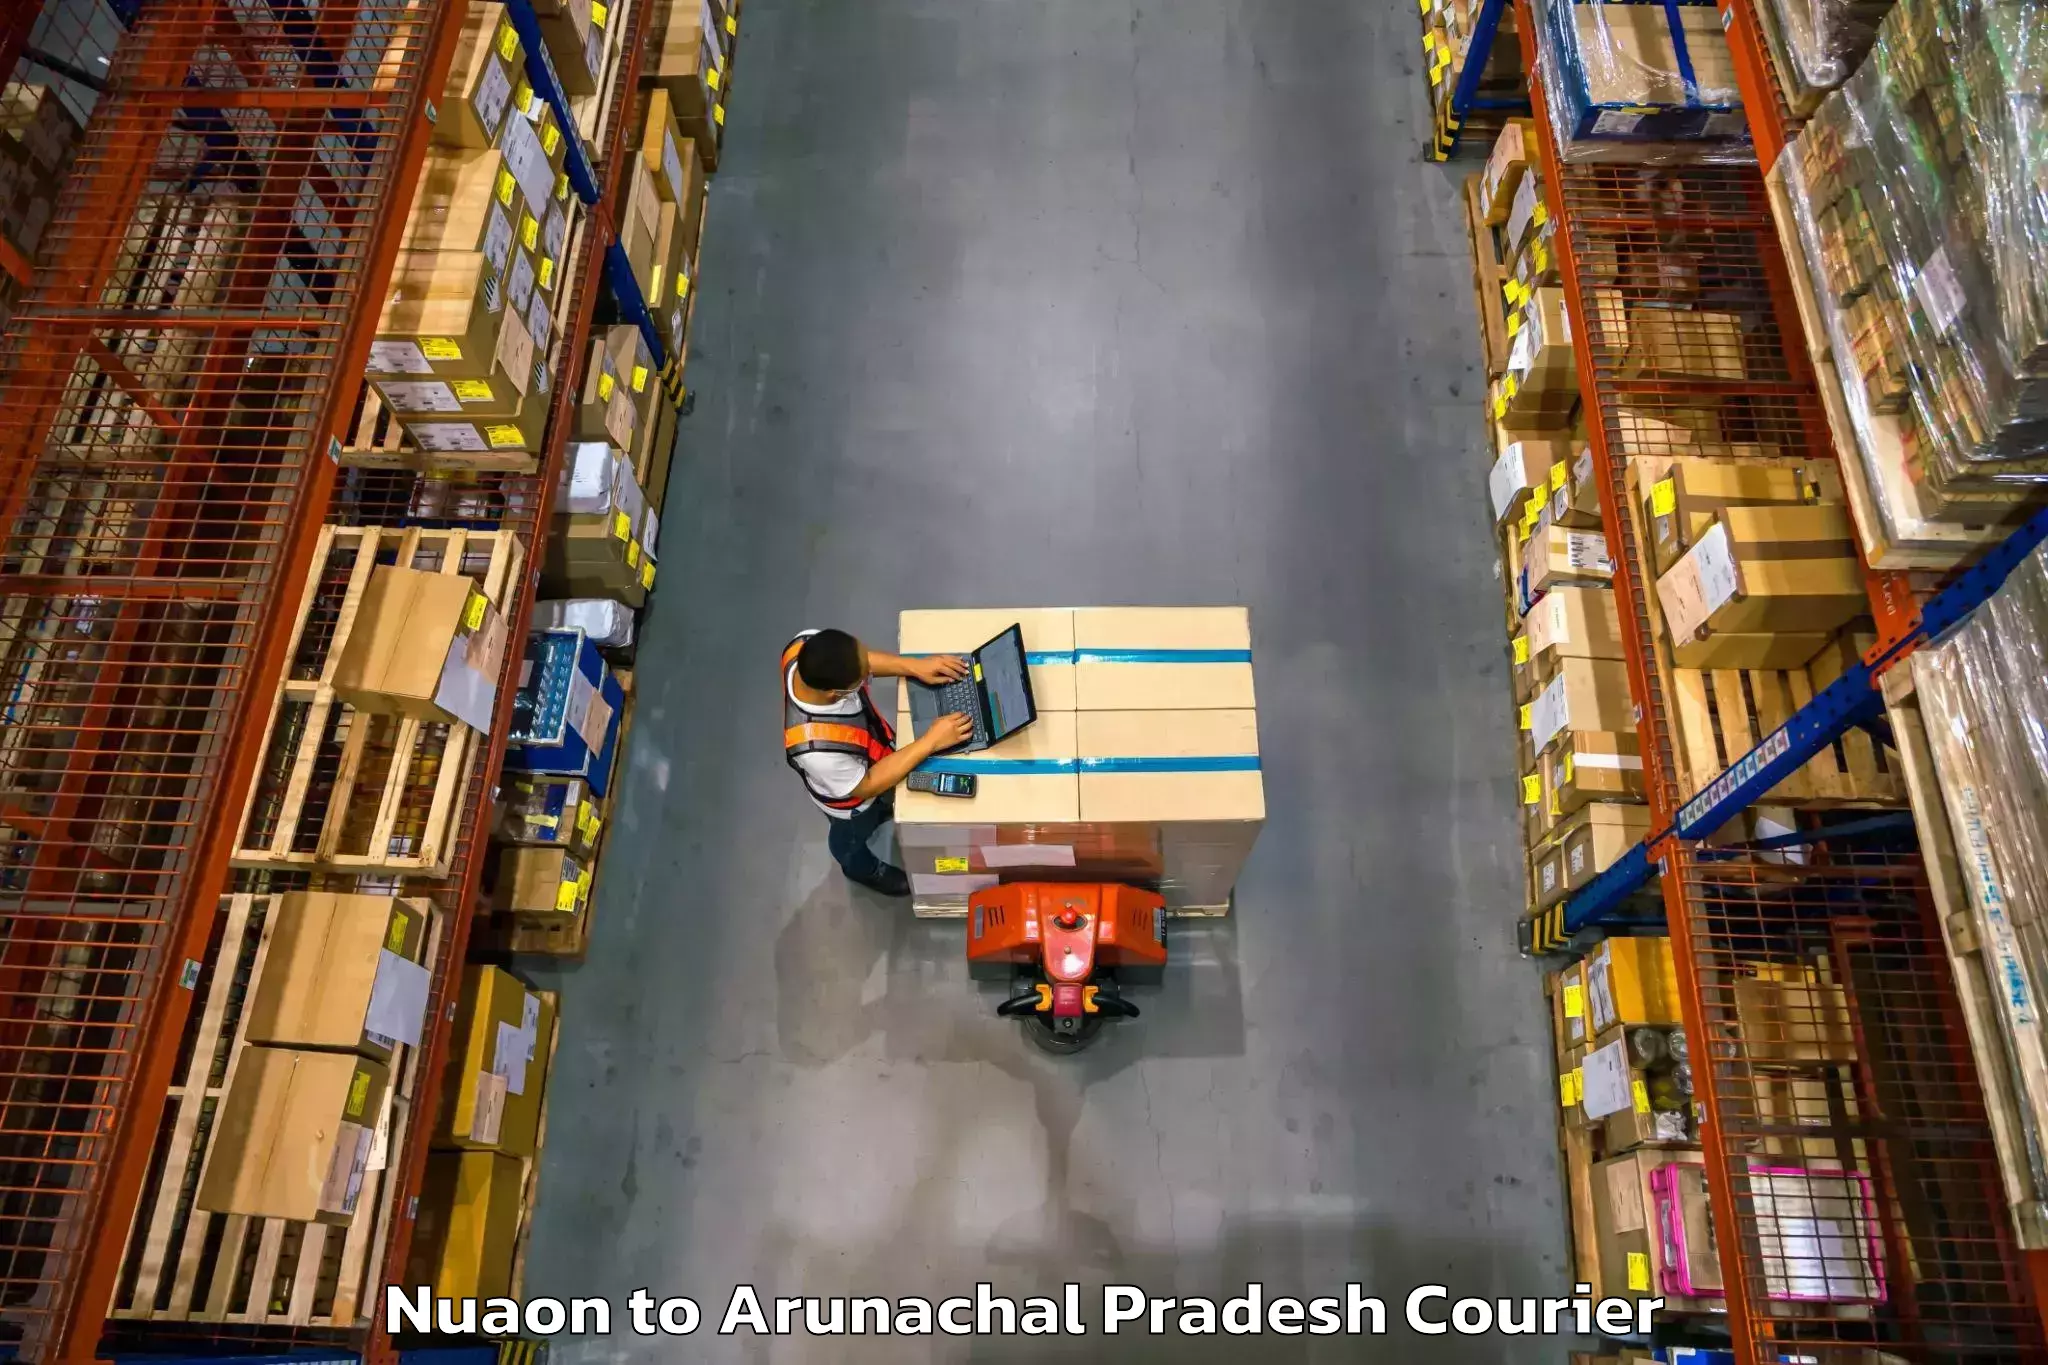 Digital courier platforms Nuaon to Arunachal Pradesh